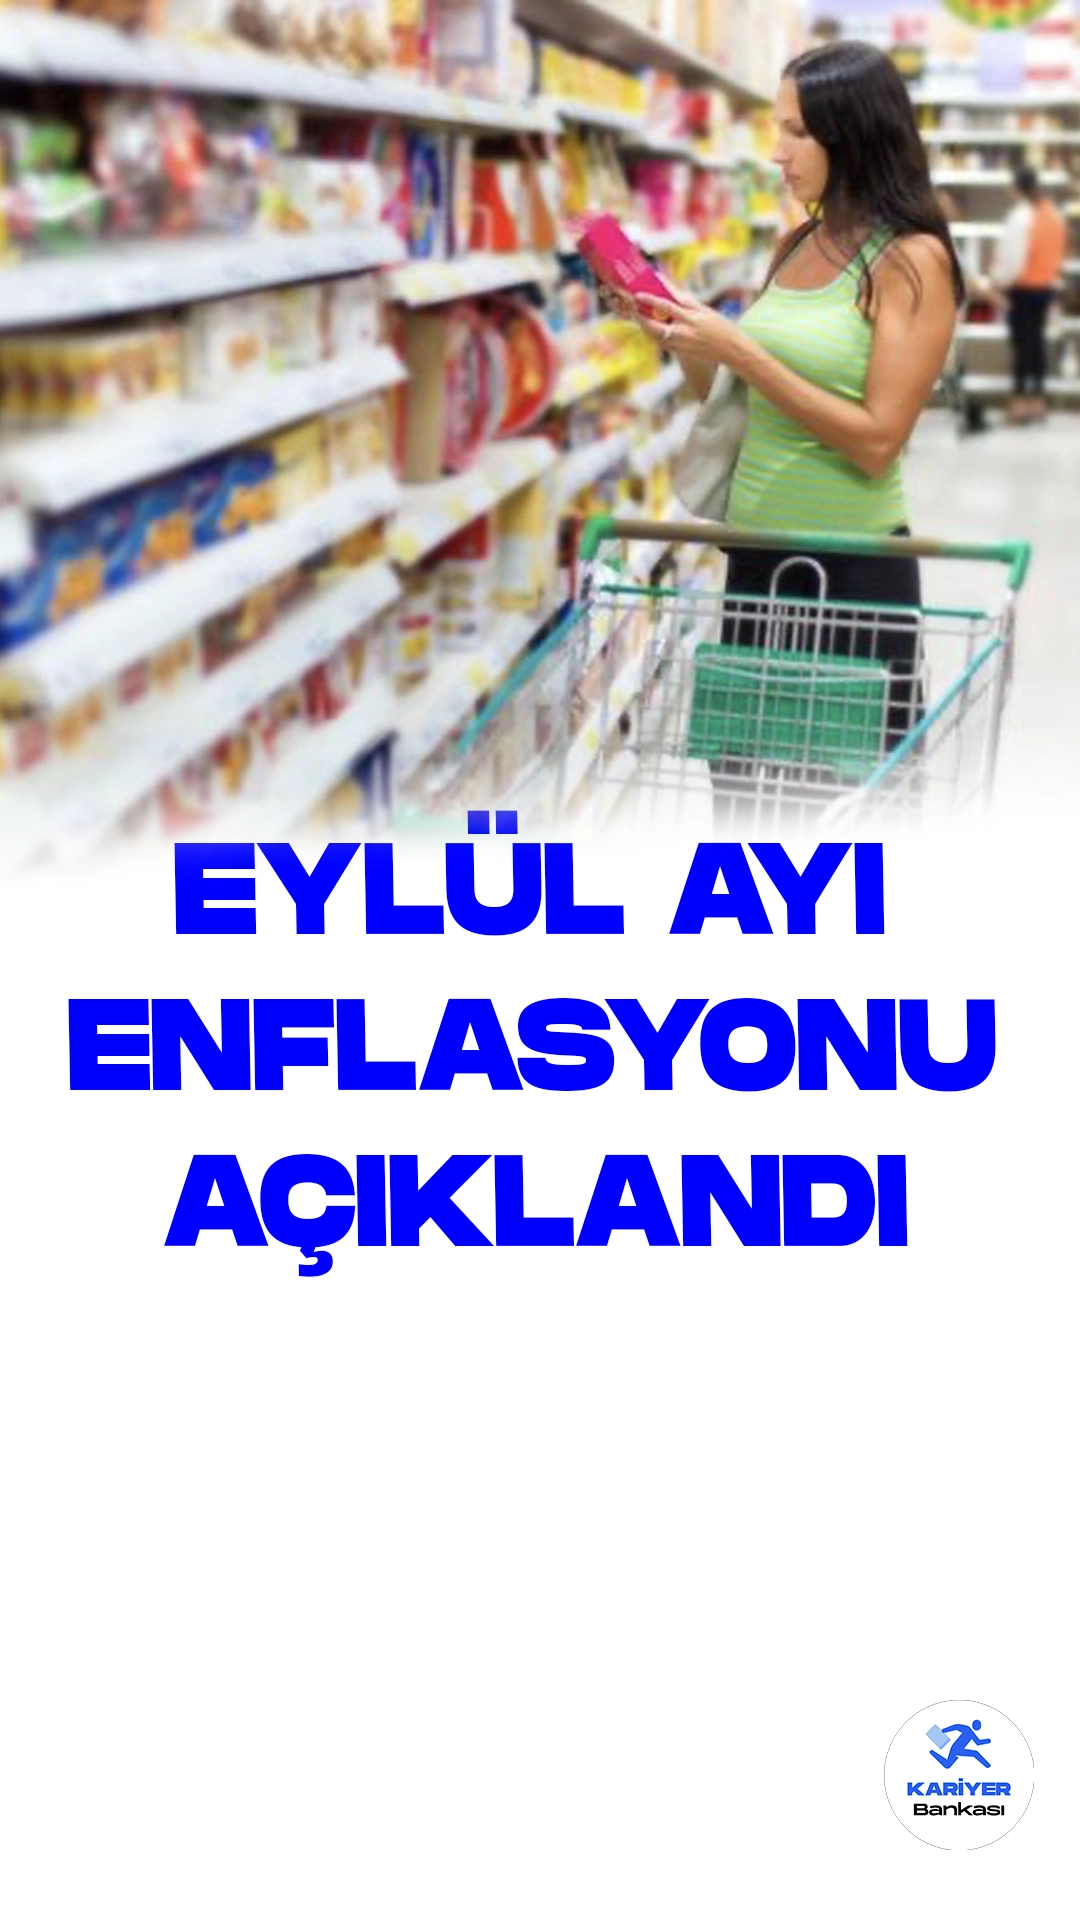 Tüketici Fiyat Endeksi Eylül Ayında Yüzde 4,75 Artış Kaydetti.Türkiye İstatistik Kurumu (TÜK) tarafından yayımlanan duyuruda, Eylül ayı itibariyle Türkiye'de tüketici fiyatları endeksi (TÜFE) önemli bir artış göstererek, yüzde 4,75'lik bir yükseliş kaydetti.